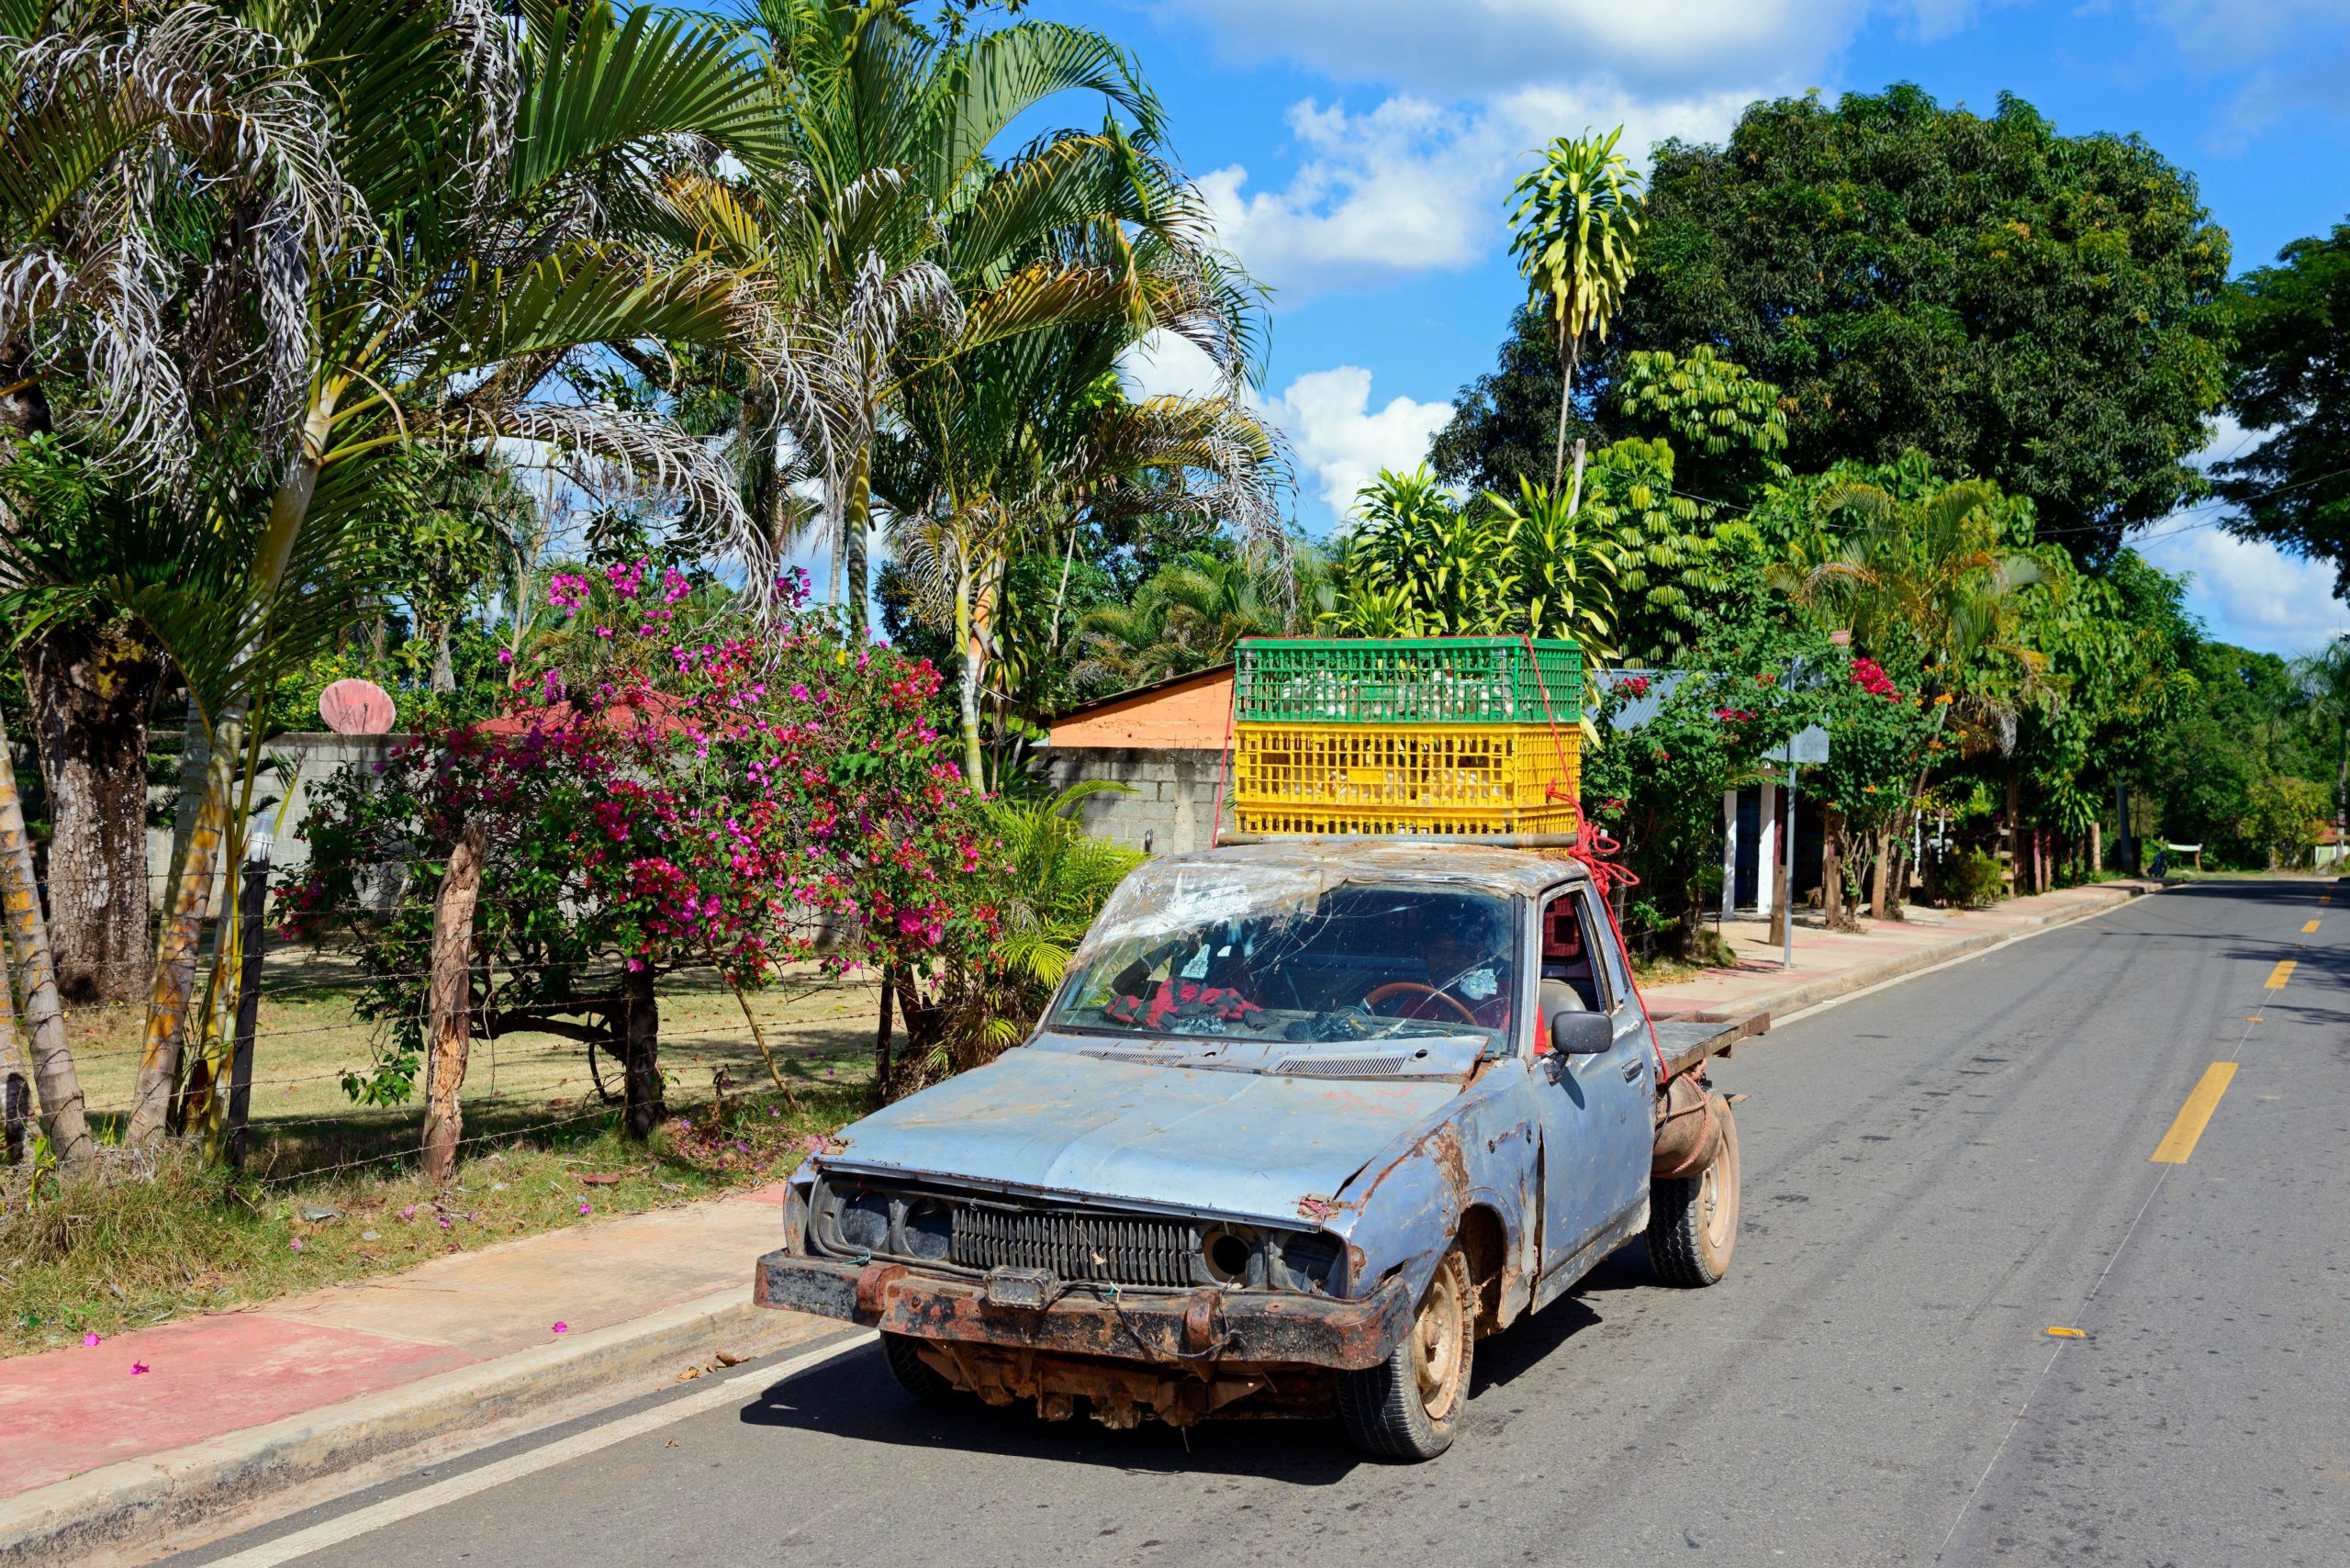 Una automóvil viejo en una carretera con plantas tropicales 